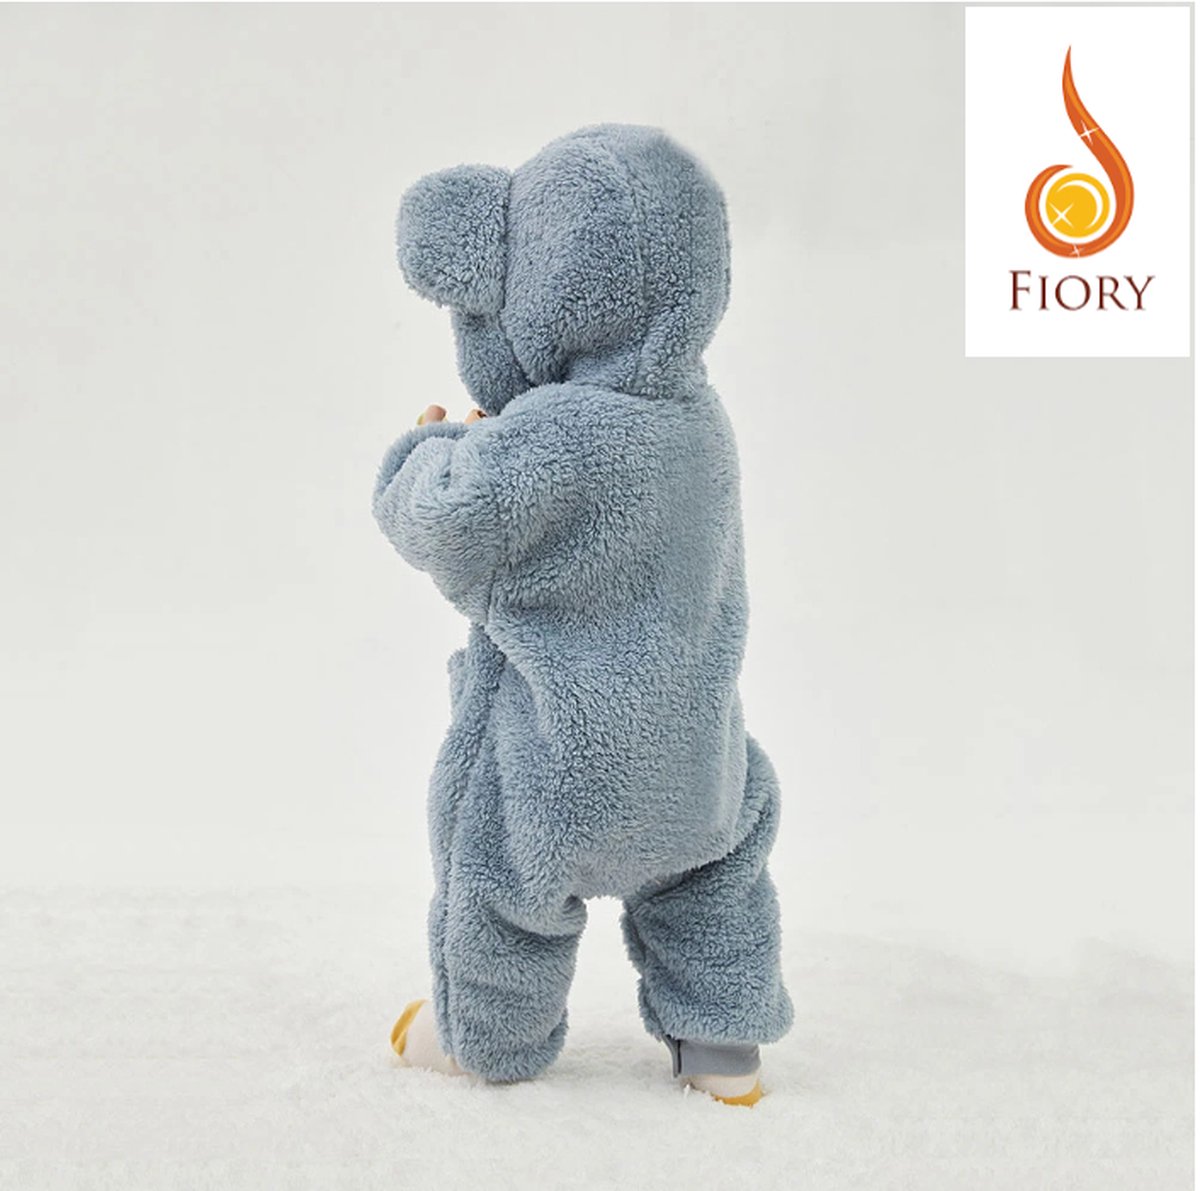 Fiory Baby Jumpsuite Teddybeer| 0 tm 12 maanden| Jumpsuite| zachte vacht| Babykleding| Winterpak| Muts en Oortjes| 0-12 maanden| blauw/grijs